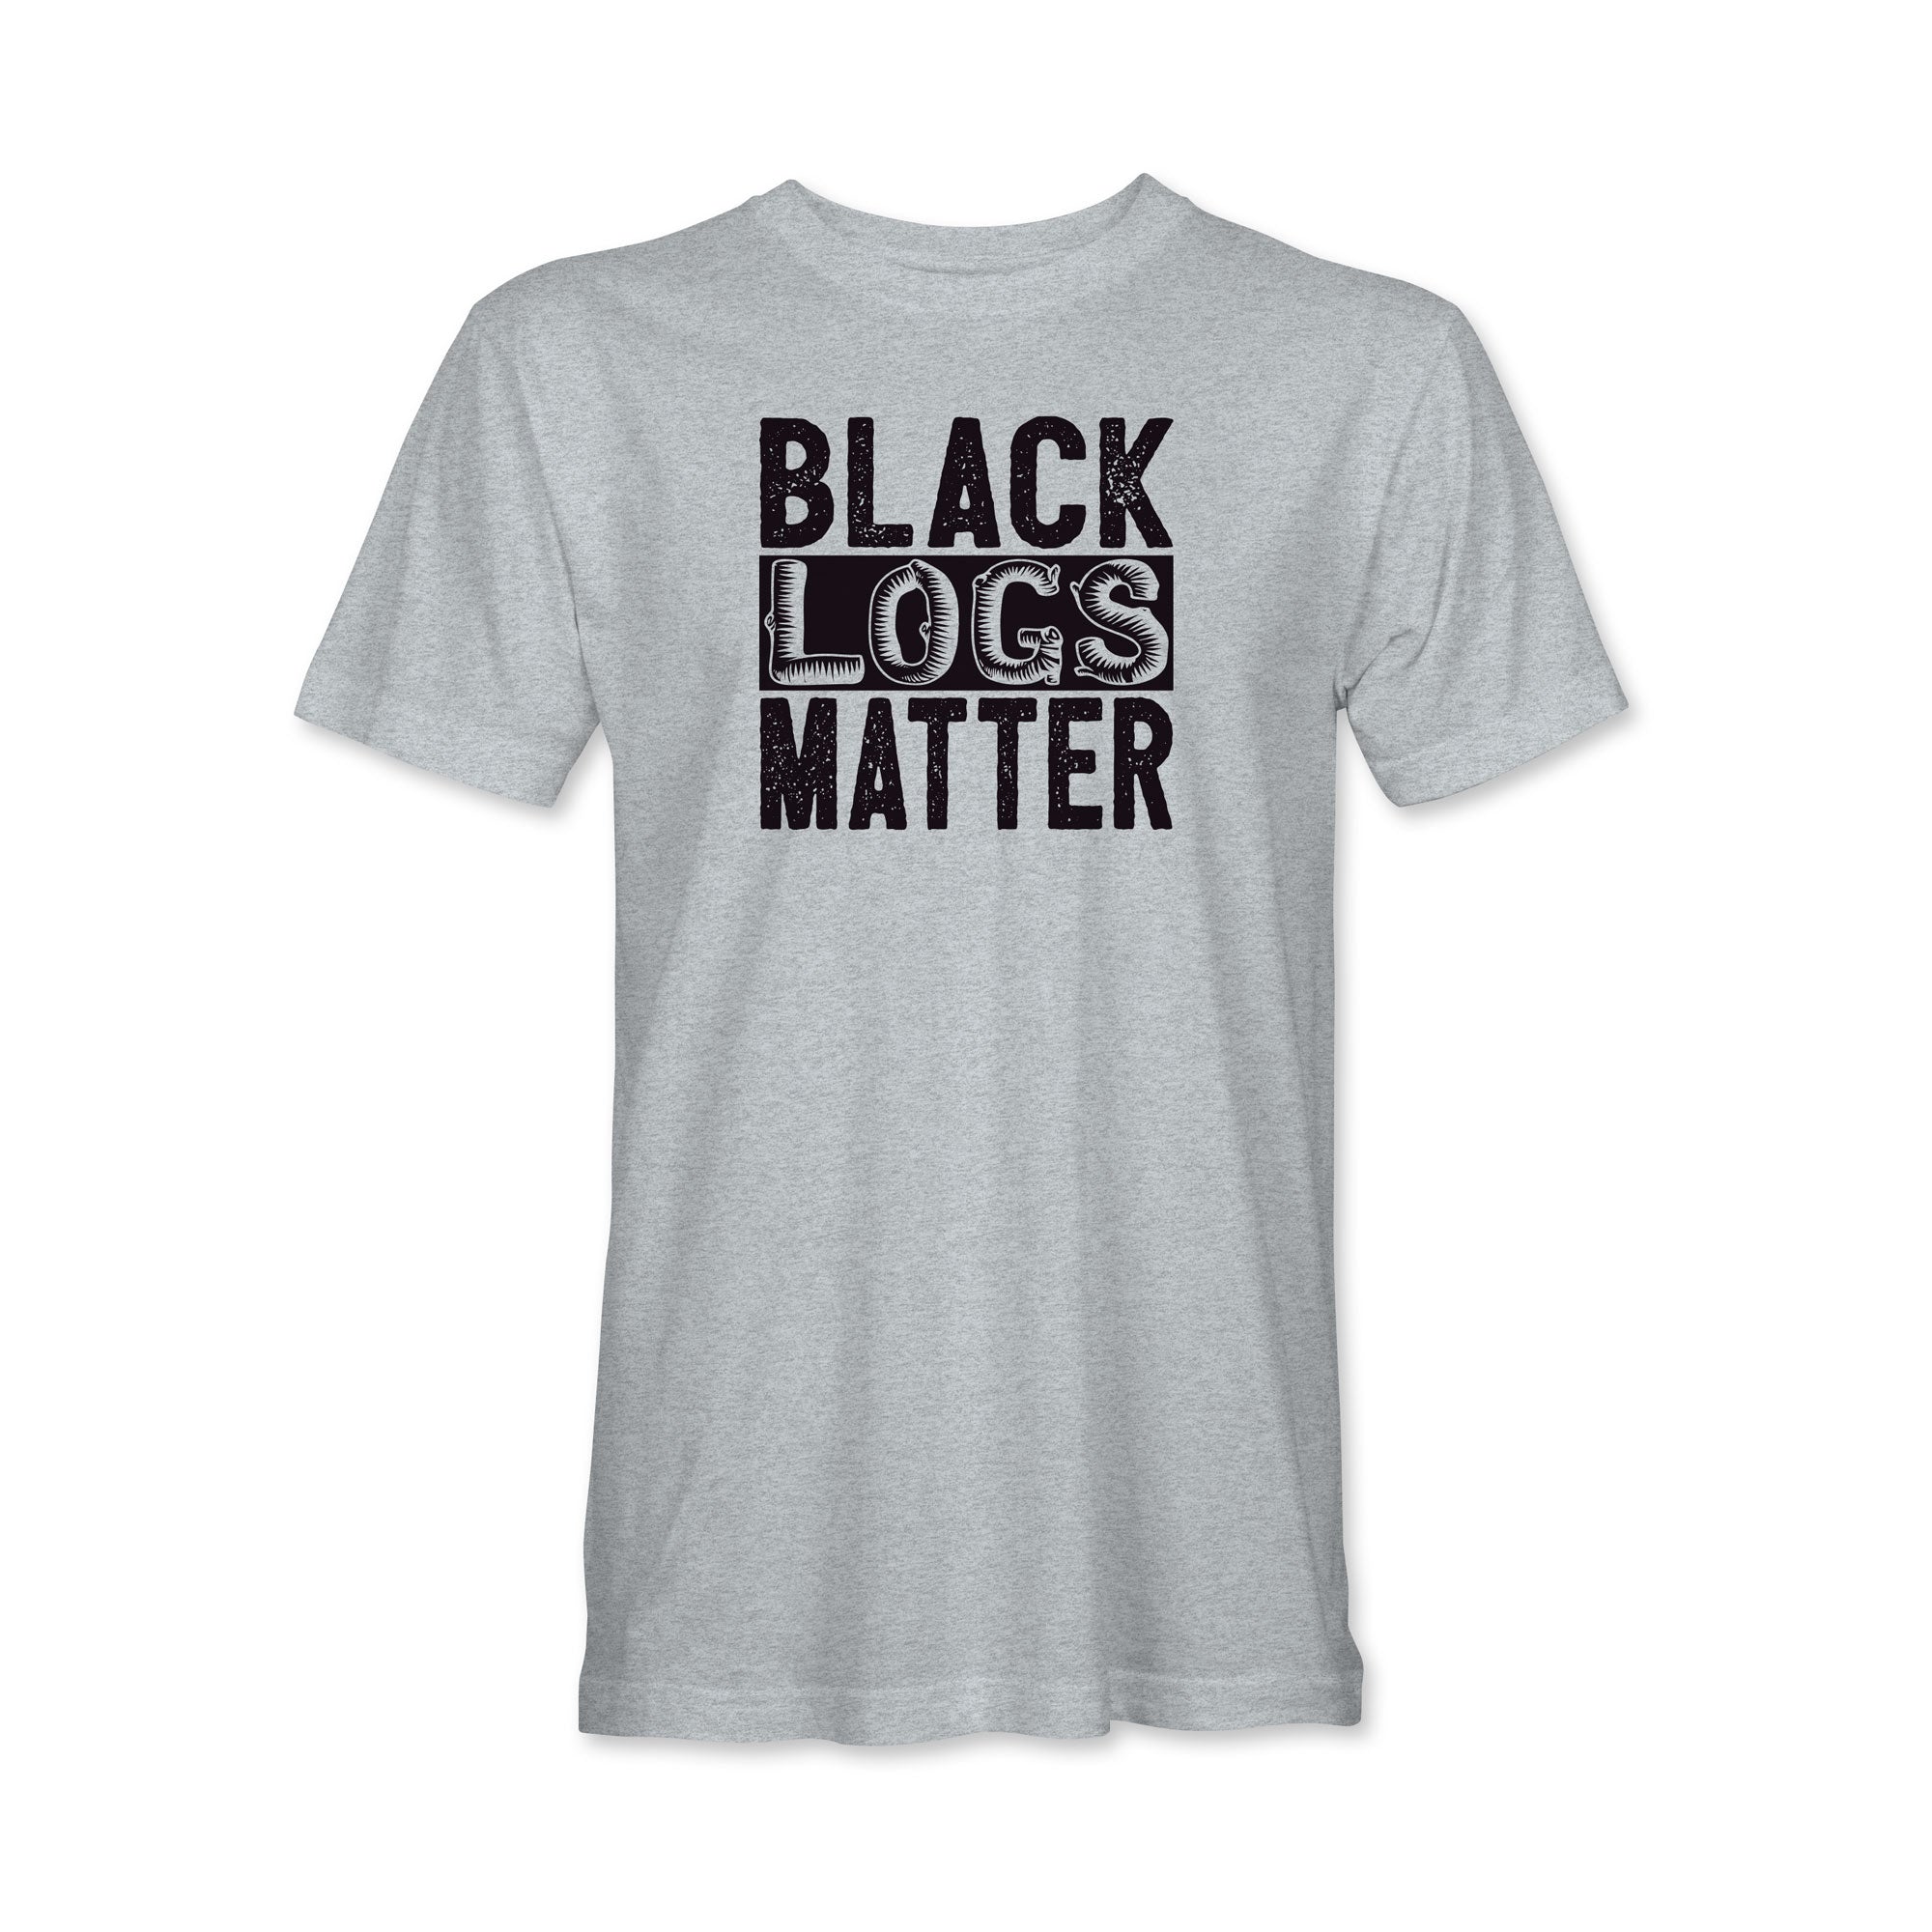 Black Logs Matter T-Shirt